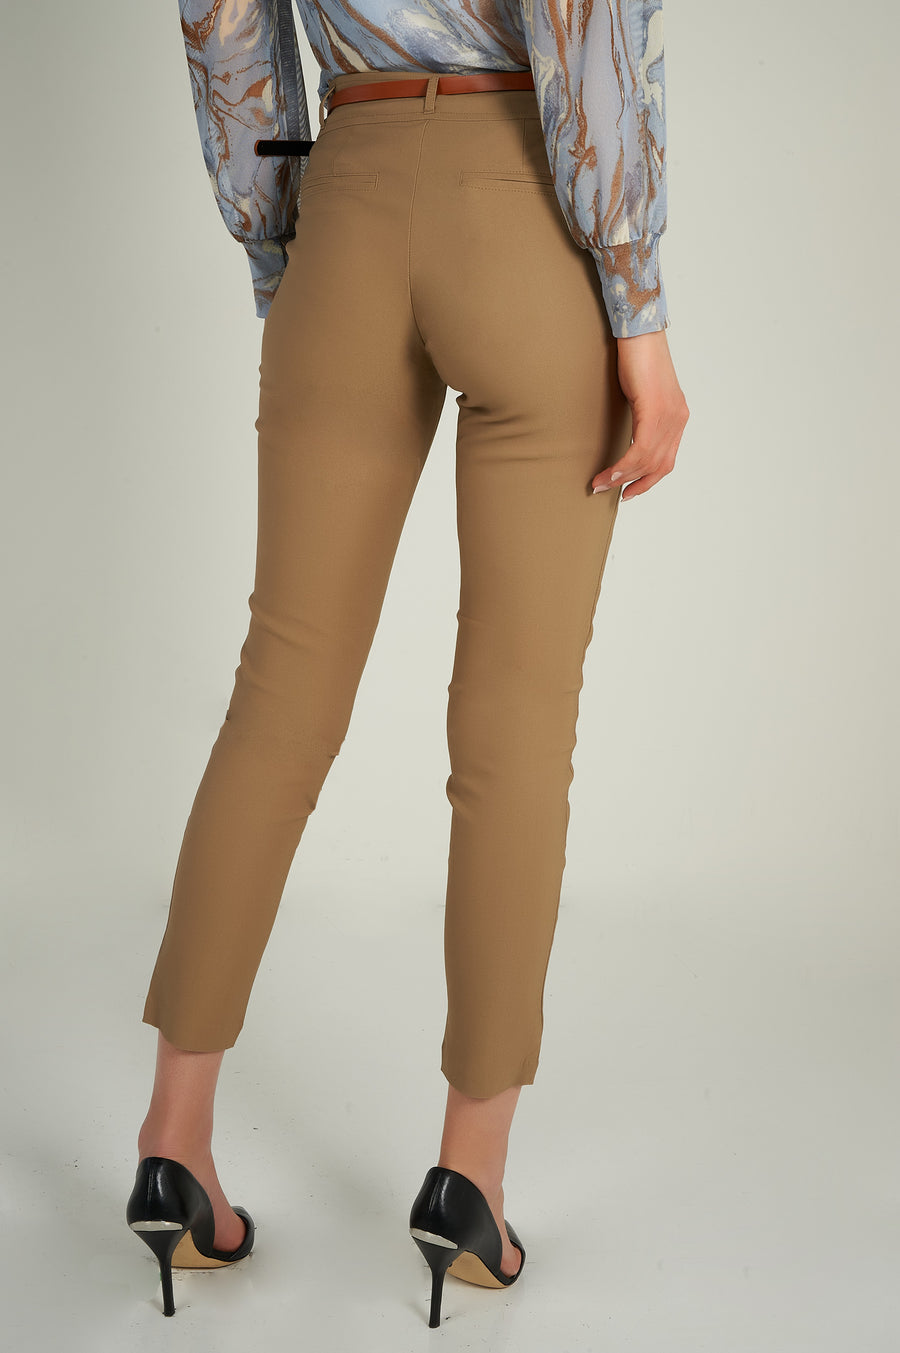 magasinez les pantalons pour femme de chez colori collection printemps été - Shop women's pants from colori spring summer collection